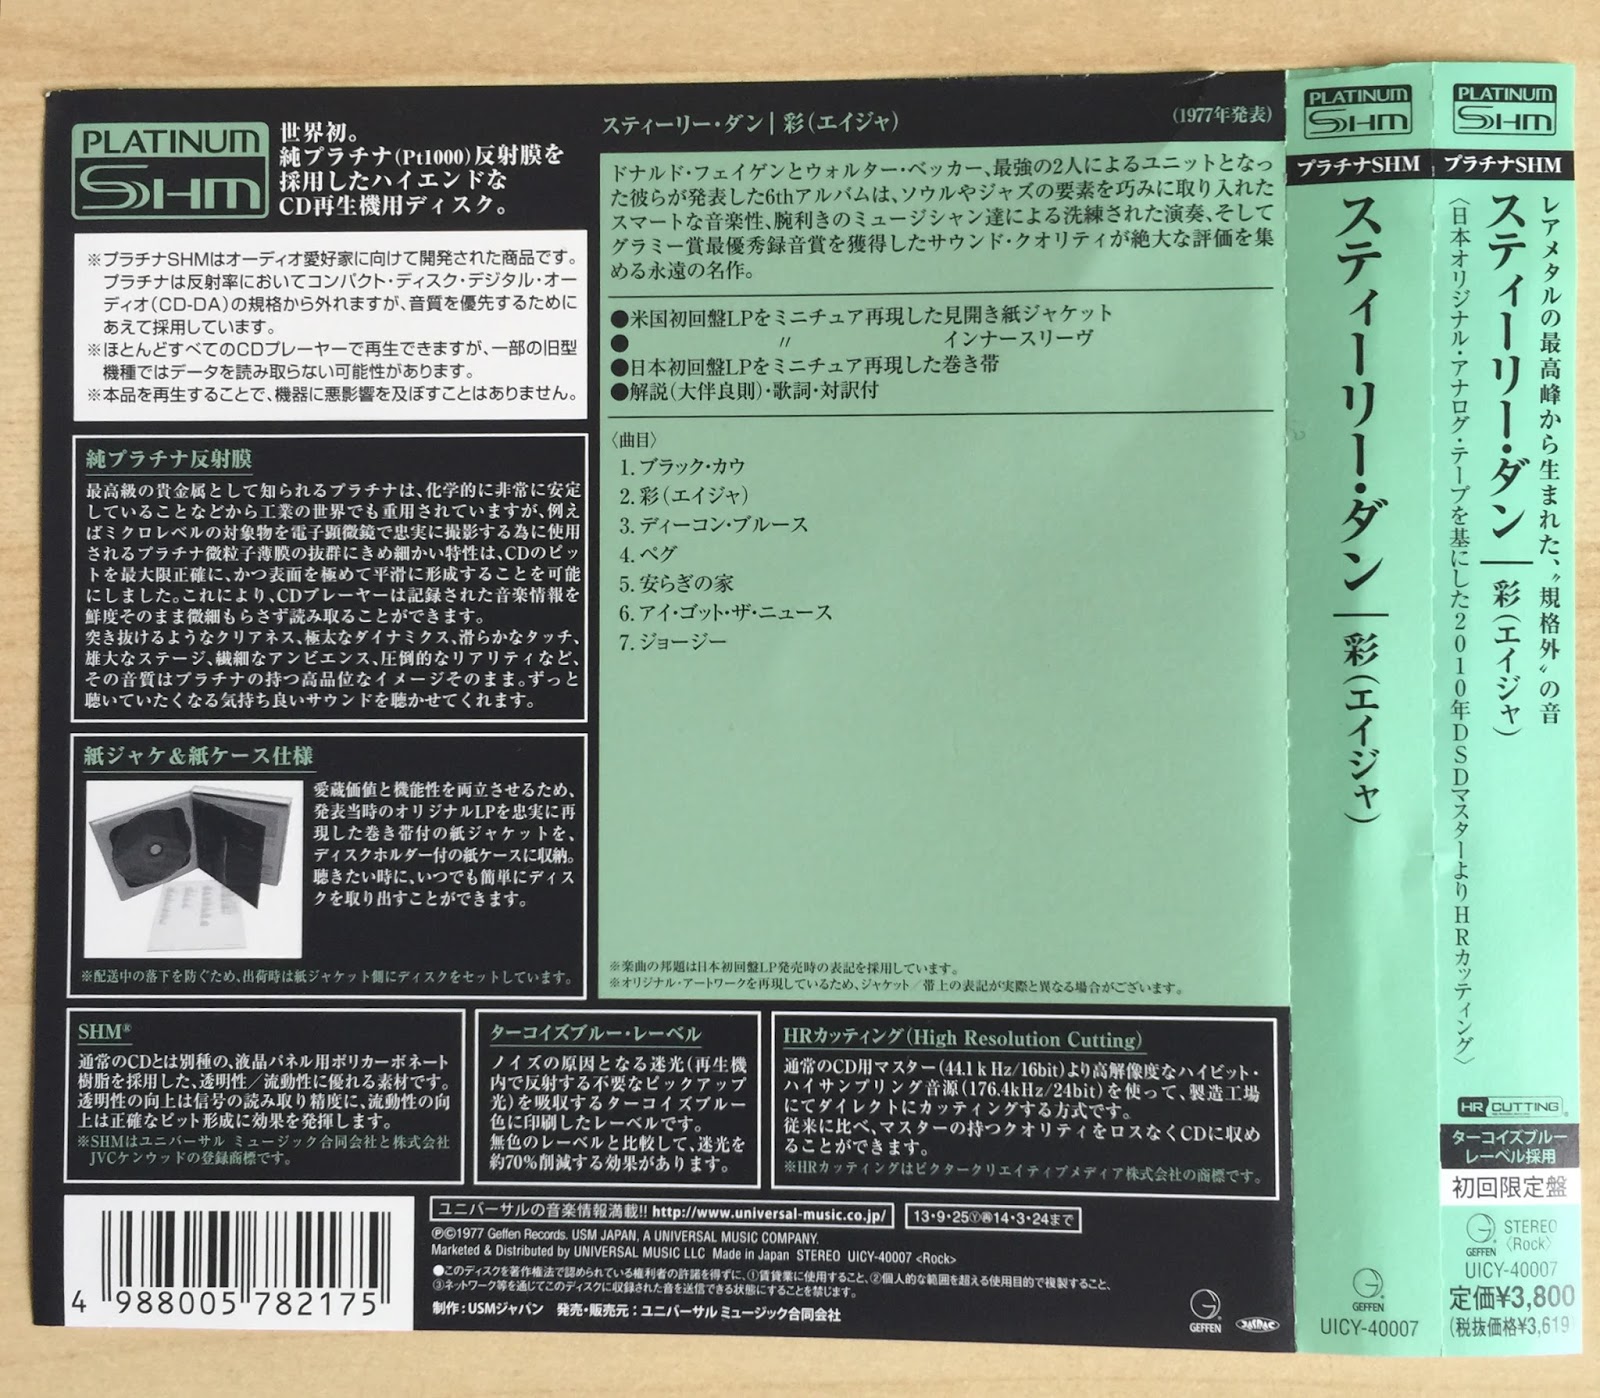 Dire Straits - Japan Jewel Case SHM - 9 CD Bundle